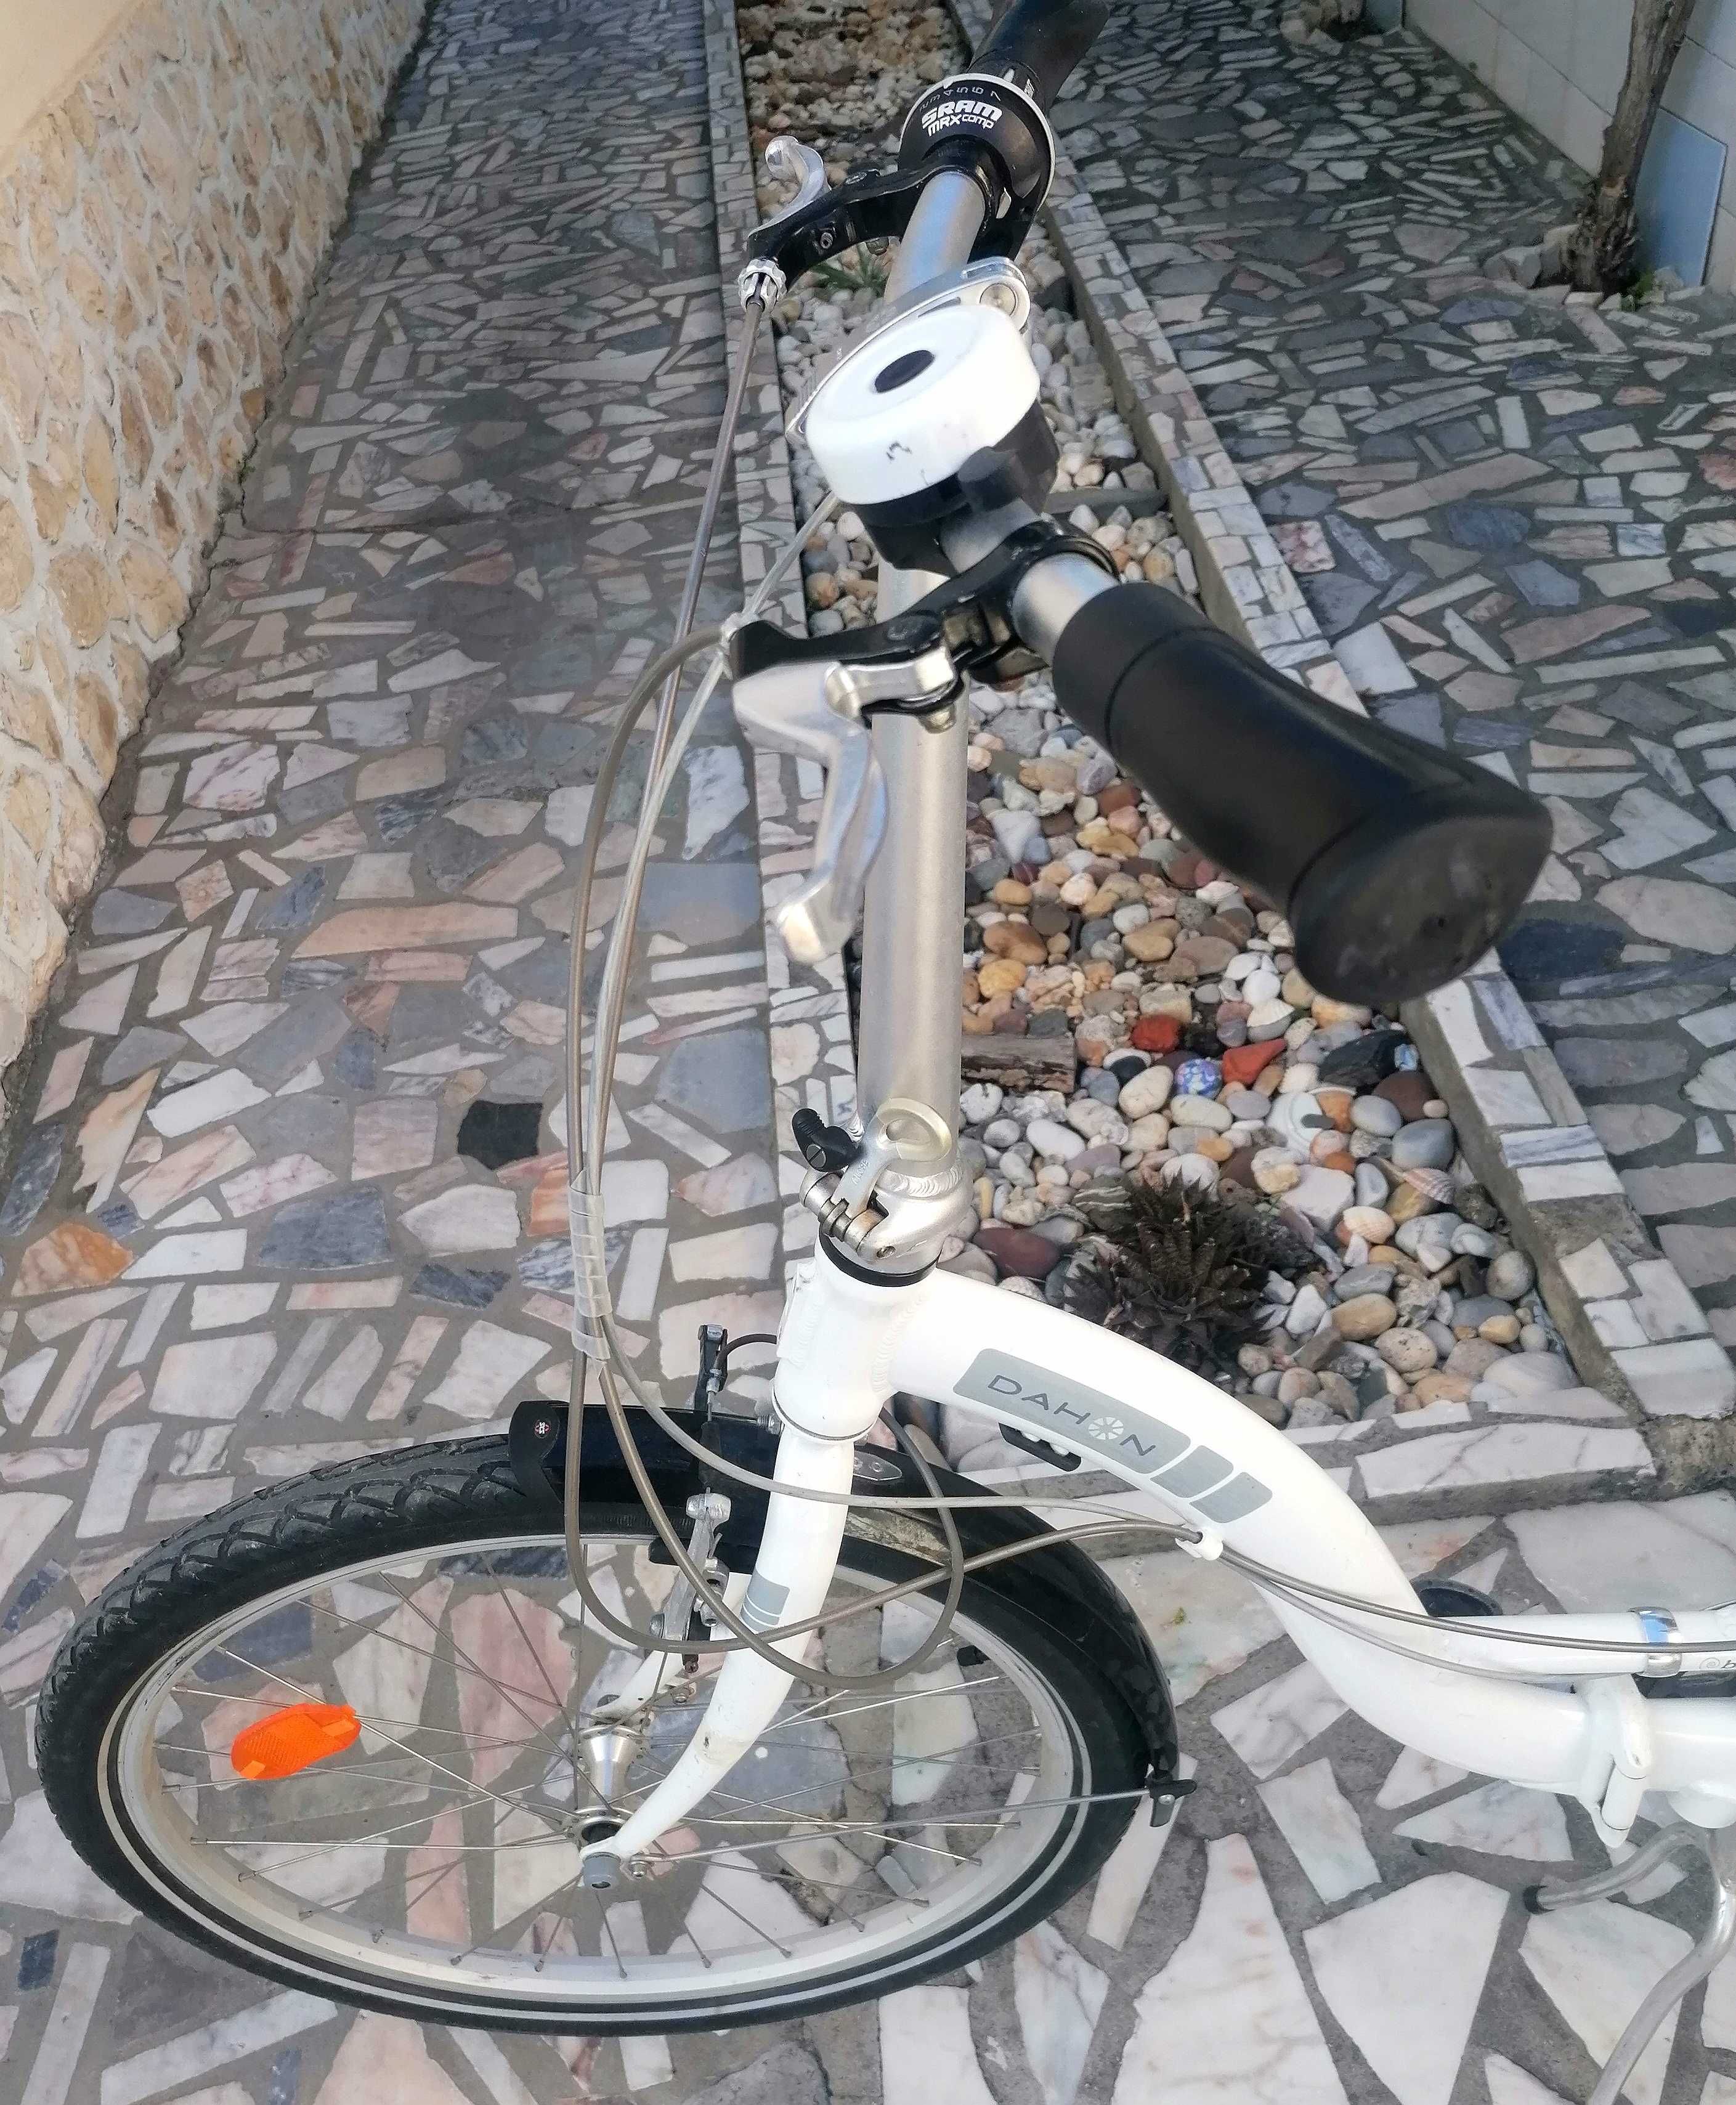 Bicicleta Dahon Briza, desmontável, roda 24", em bom estado